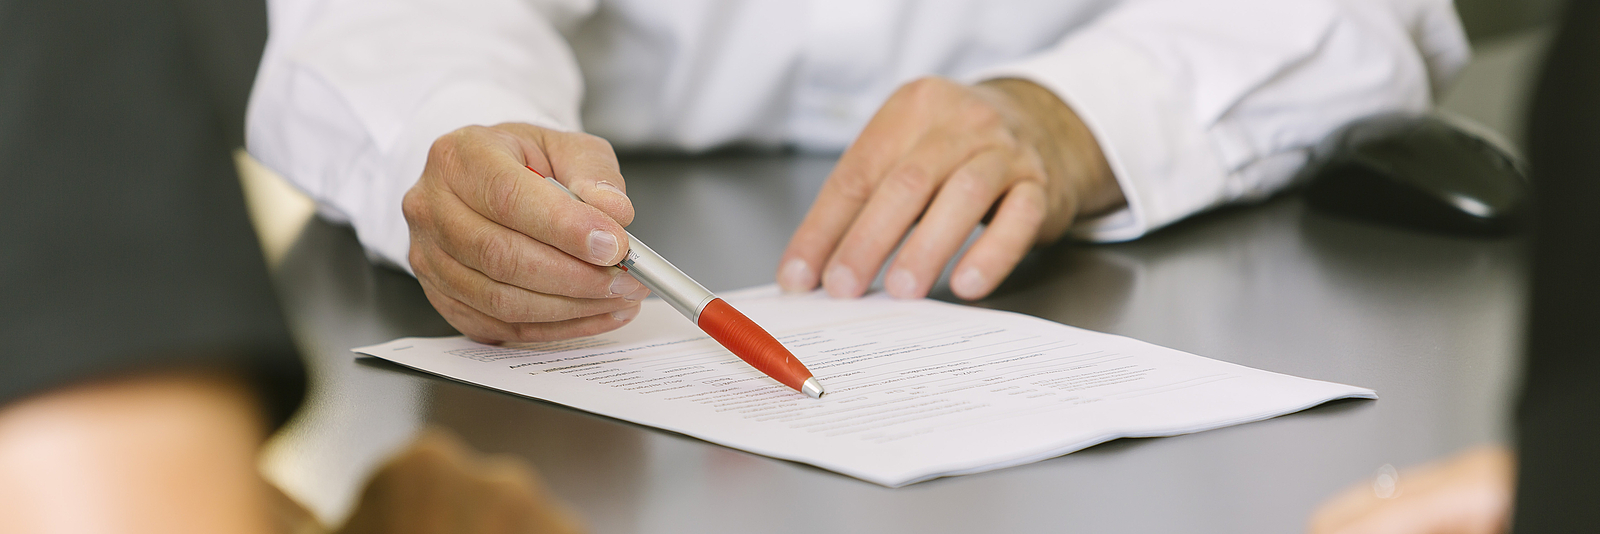 Ein Mann zeigt mit einem Stift auf ein Formular, das auf dem Tisch liegt. 